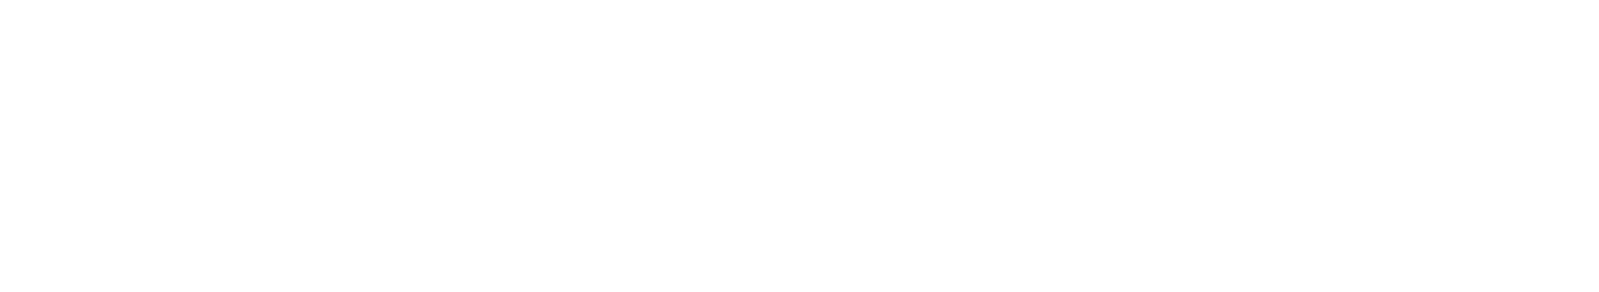 Eaton Vance logo grand pour les fonds sombres (PNG transparent)